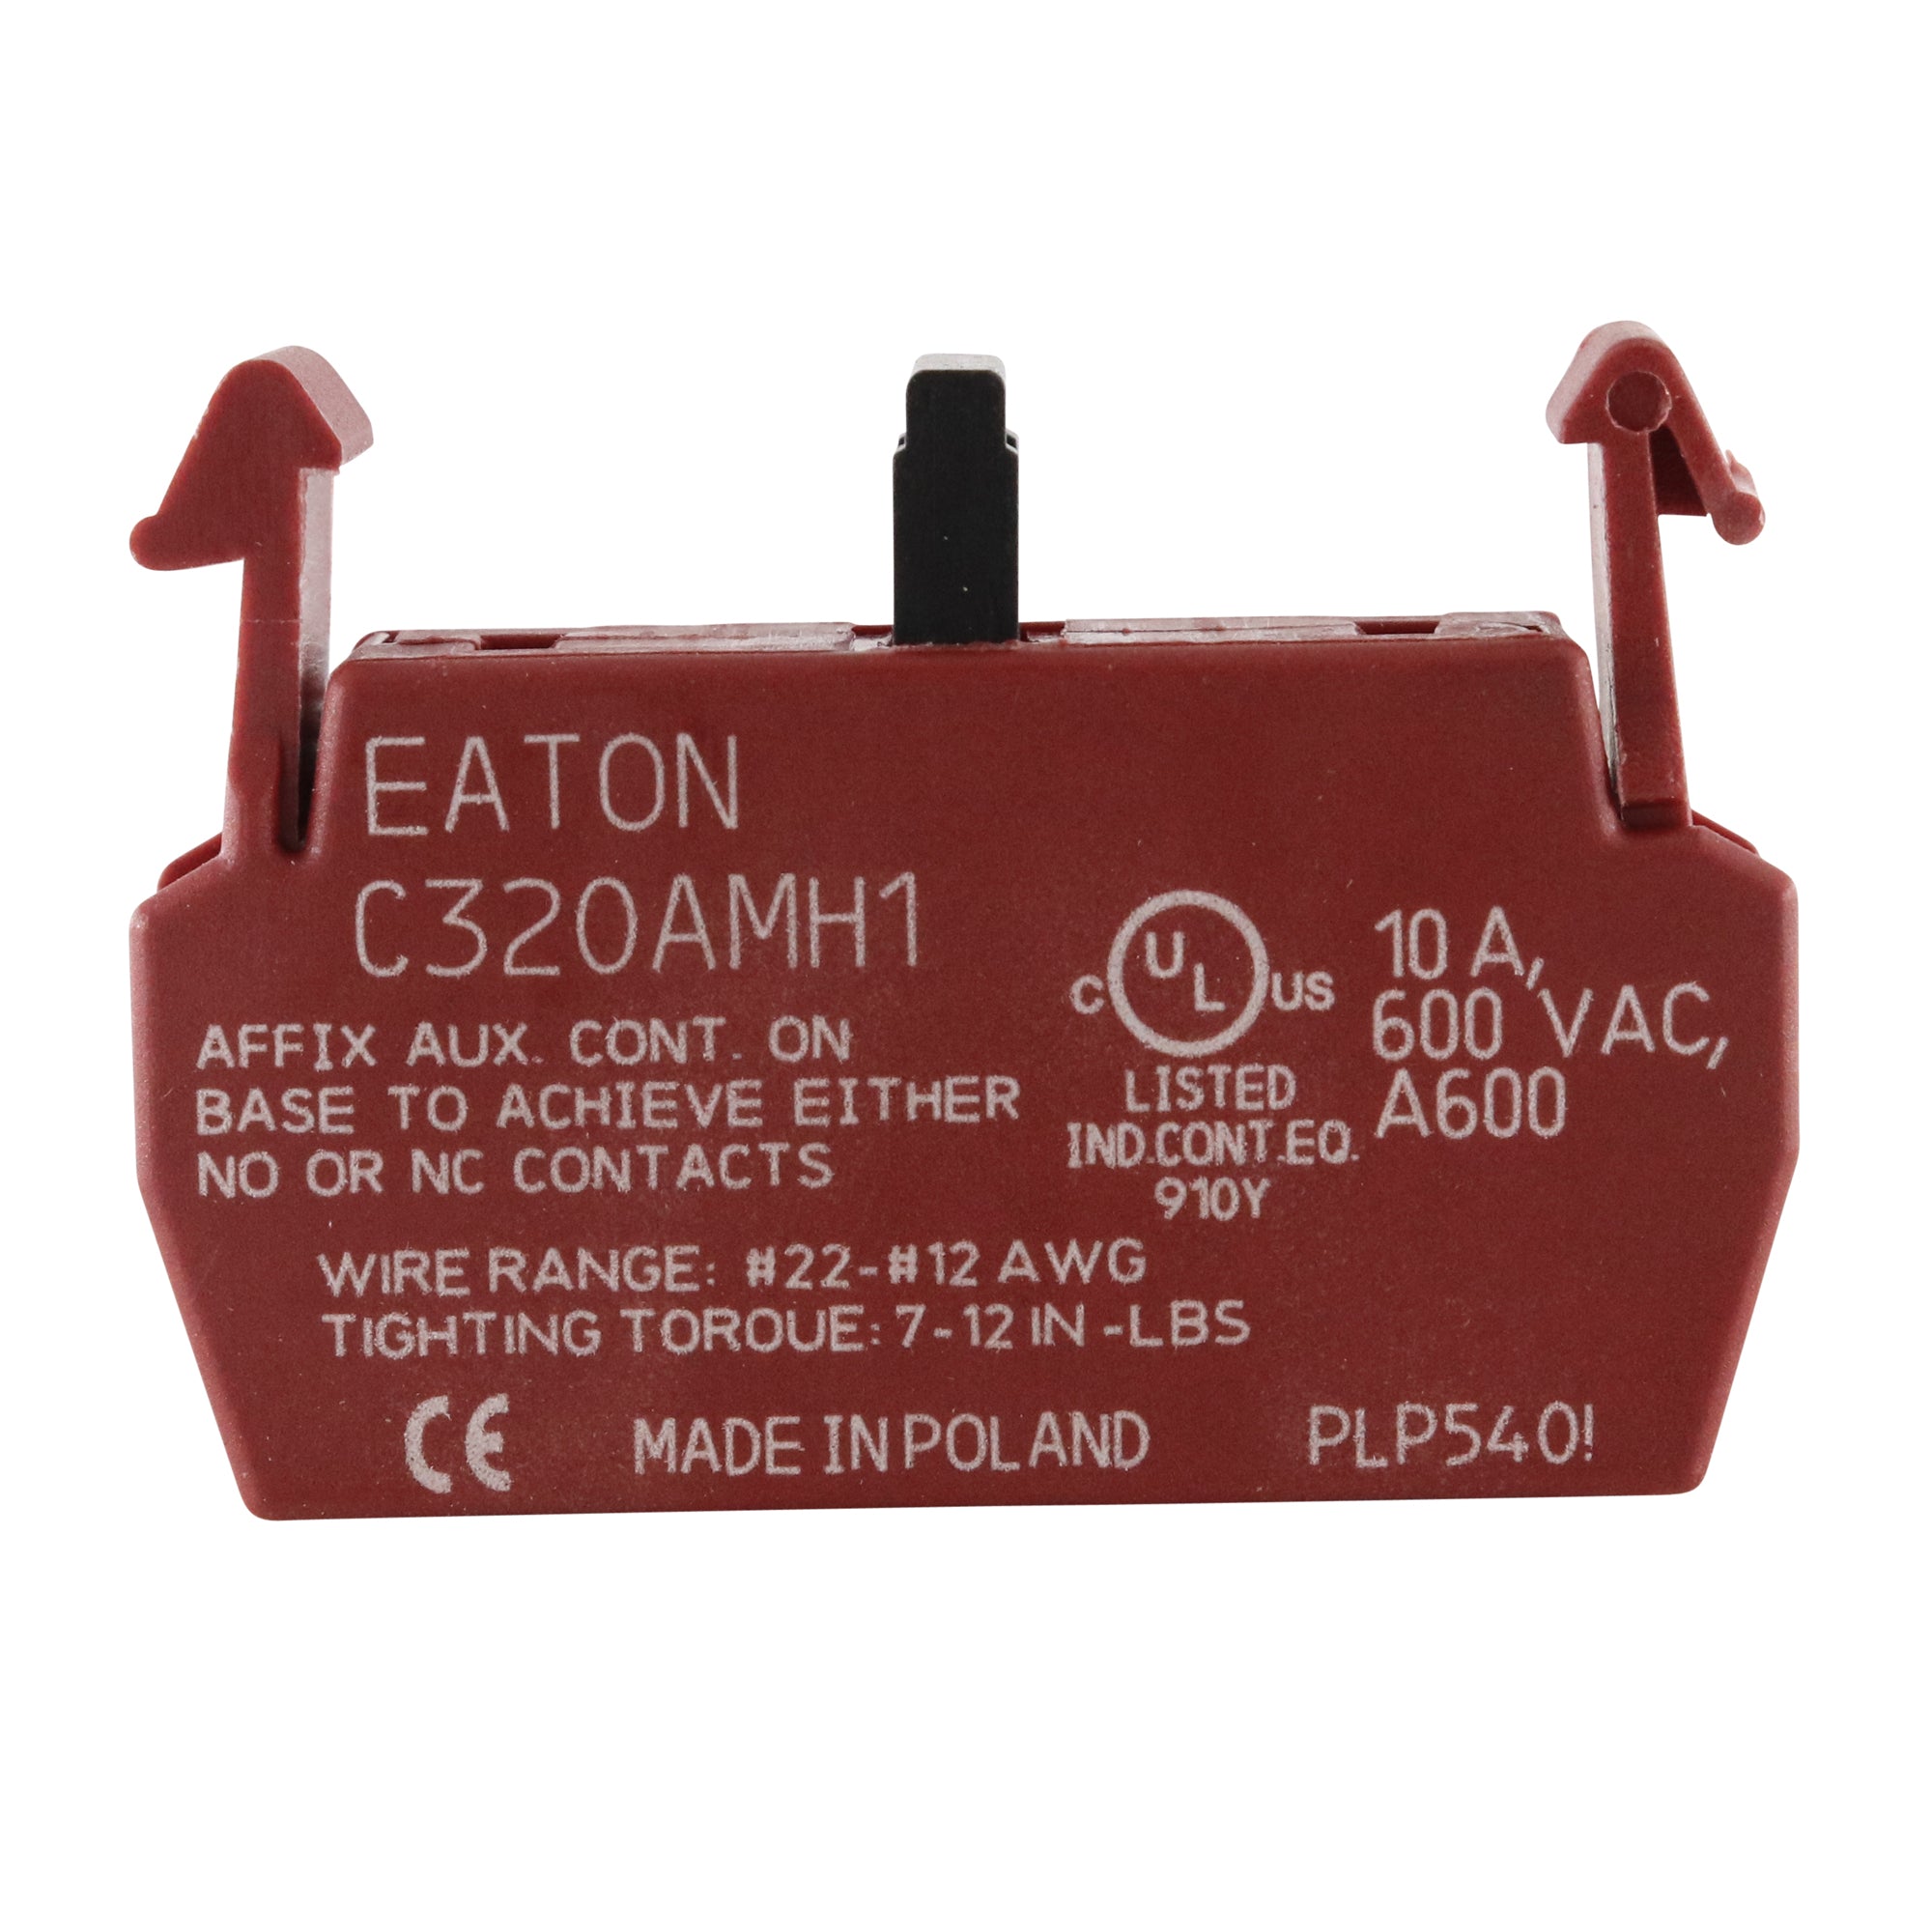 EATON, EATON C320AMH1 SINGLE POLE AUXILIARY CONTACT BLOCK, 600V, 10A